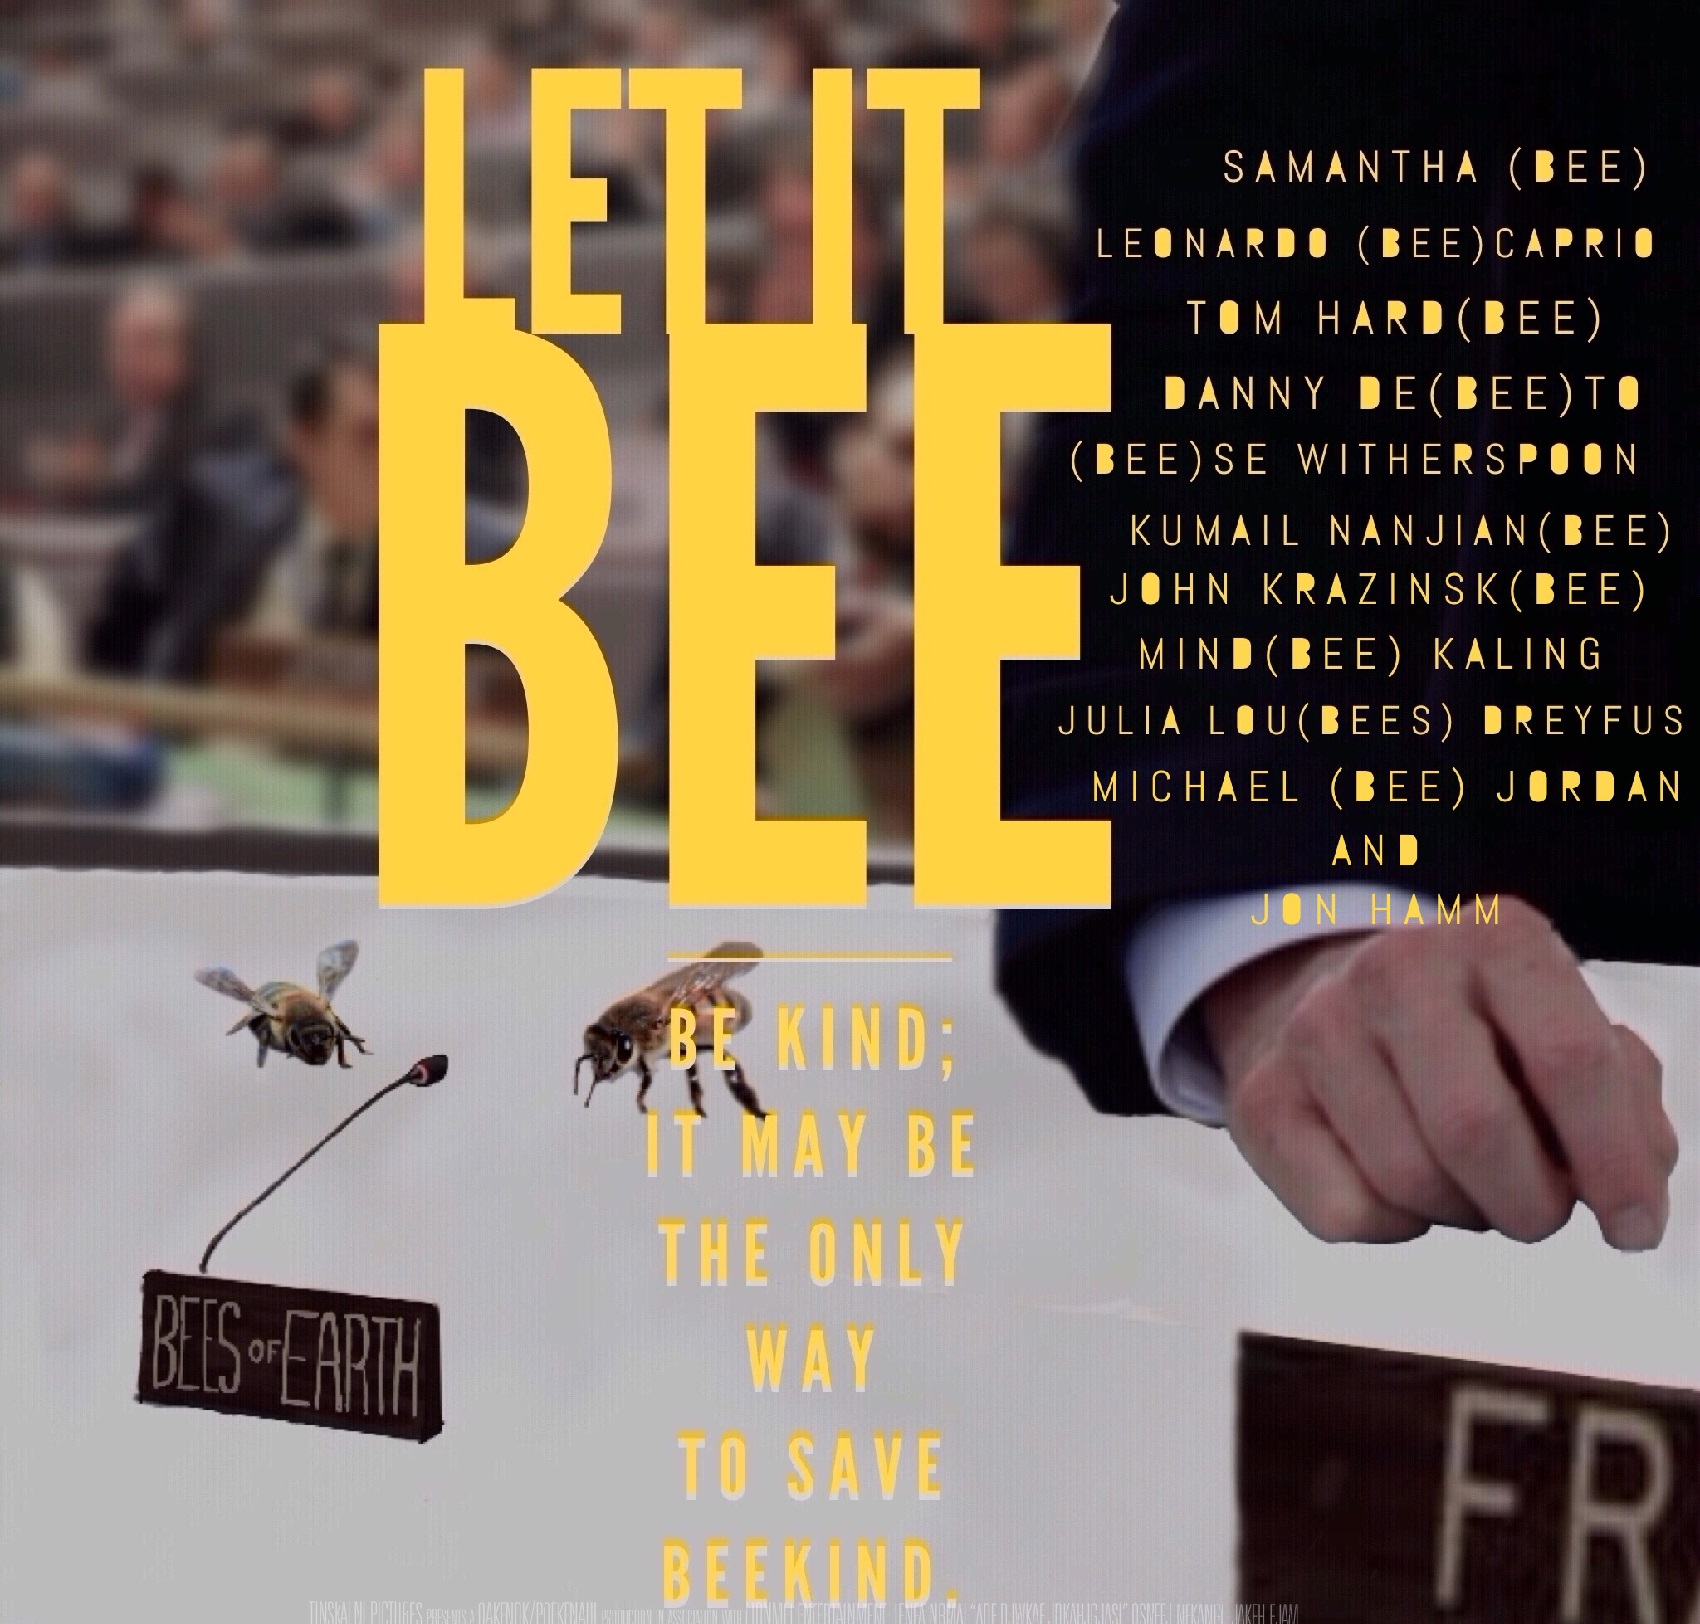 Episode 28 - Let it Bee feat. Alyx Scotolati